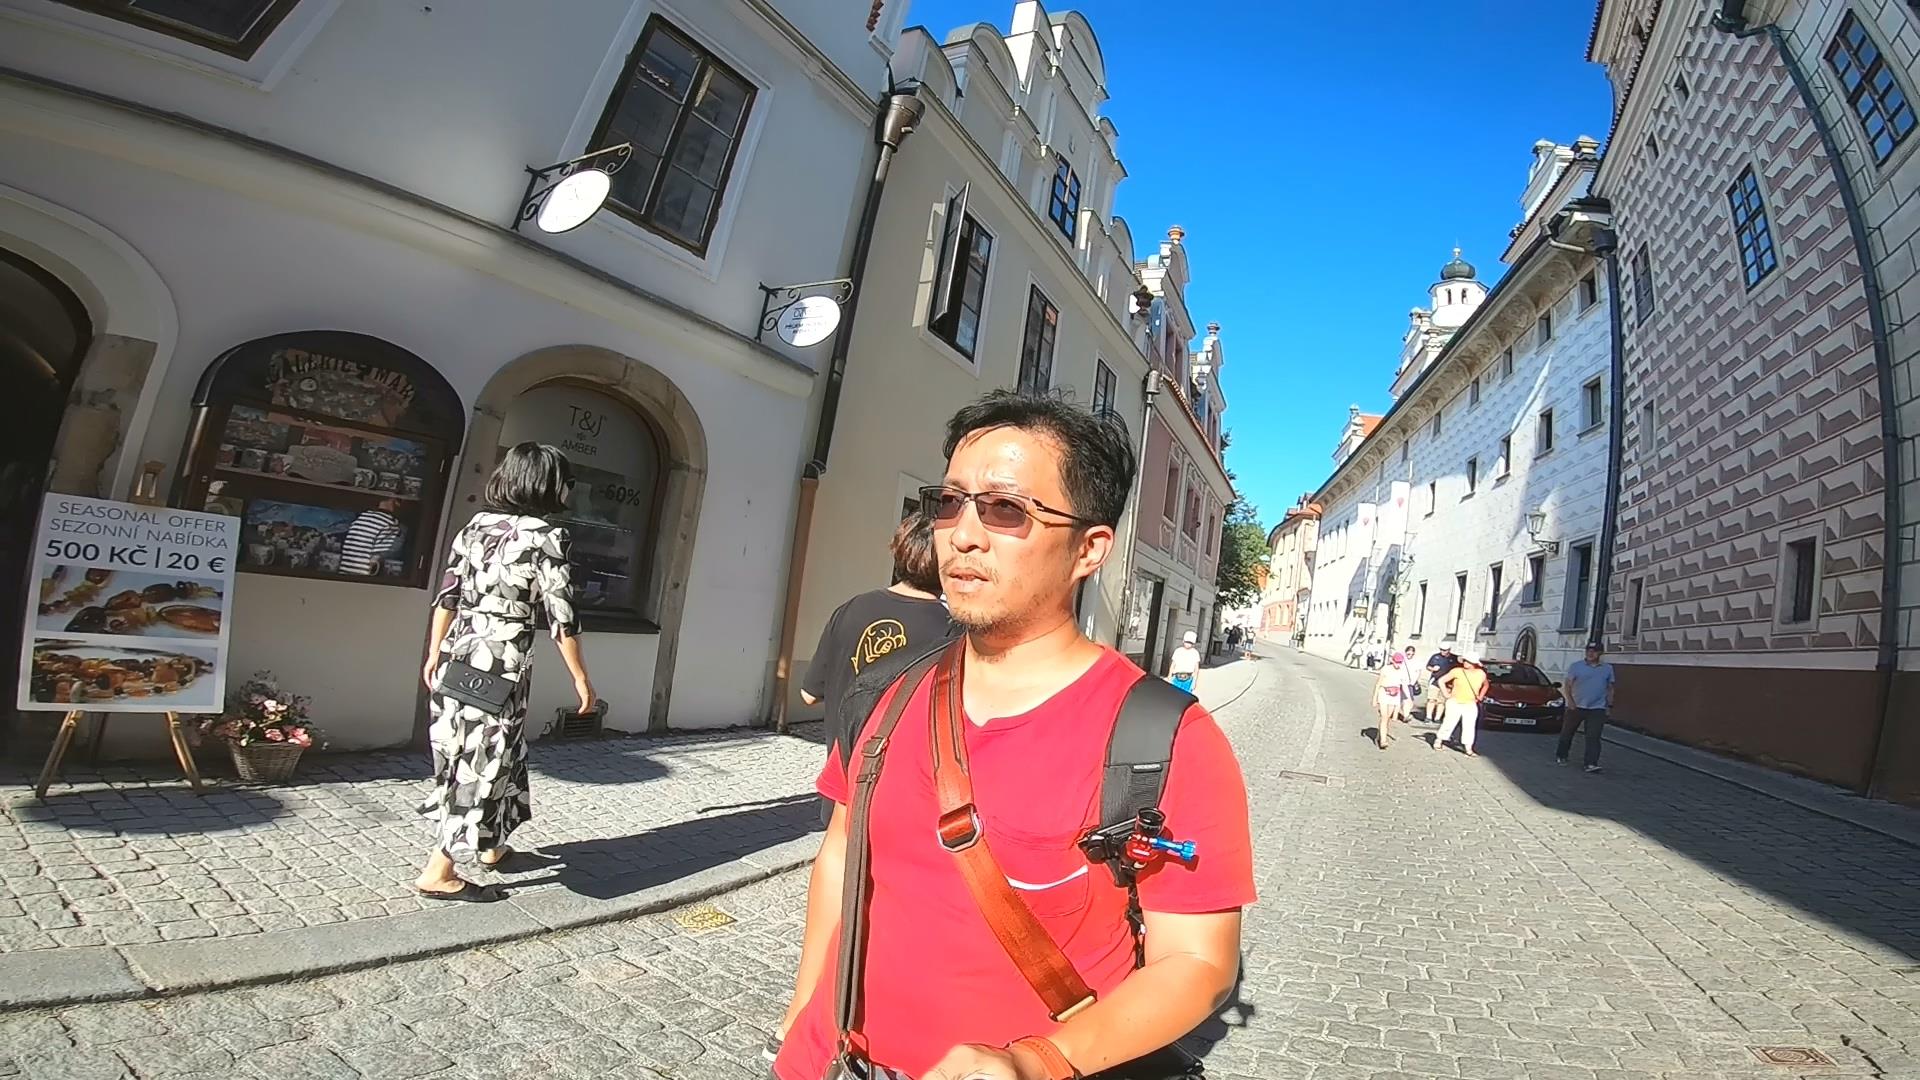 [2019 中歐攝影旅行] Day11 – 薩爾斯堡 Salzburg - 捷克庫倫諾夫 Krumlov、城堡區、老城區